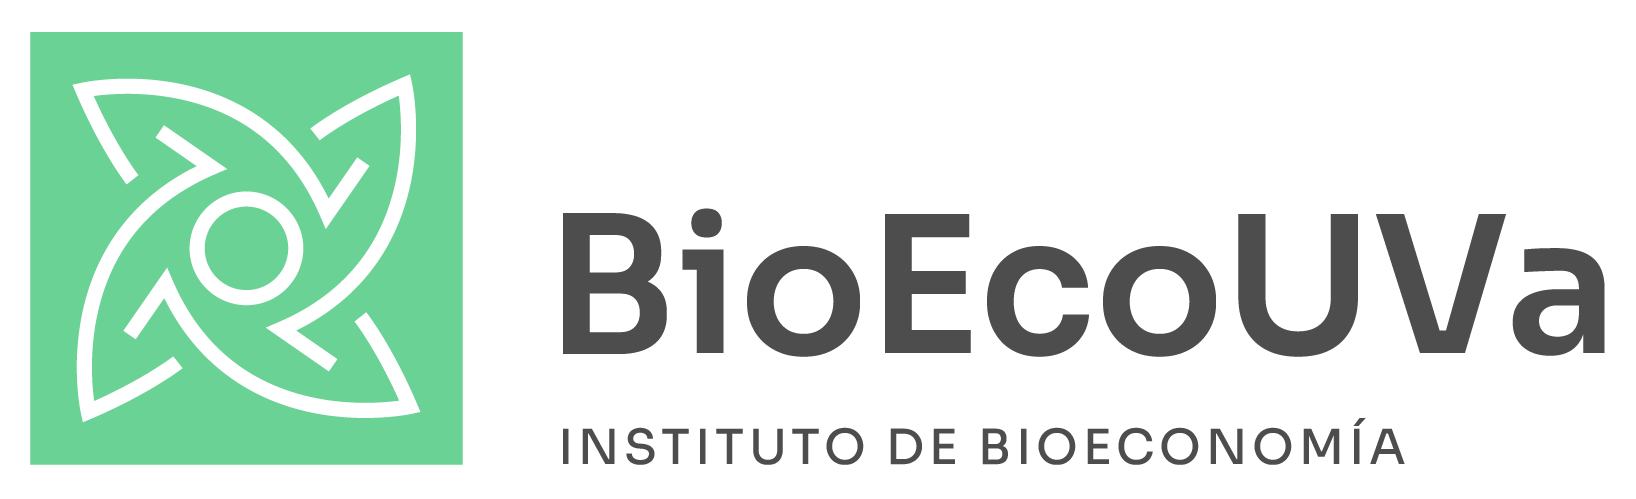 Instituto de Bioeconomía de la Universidad de Valladolid logo